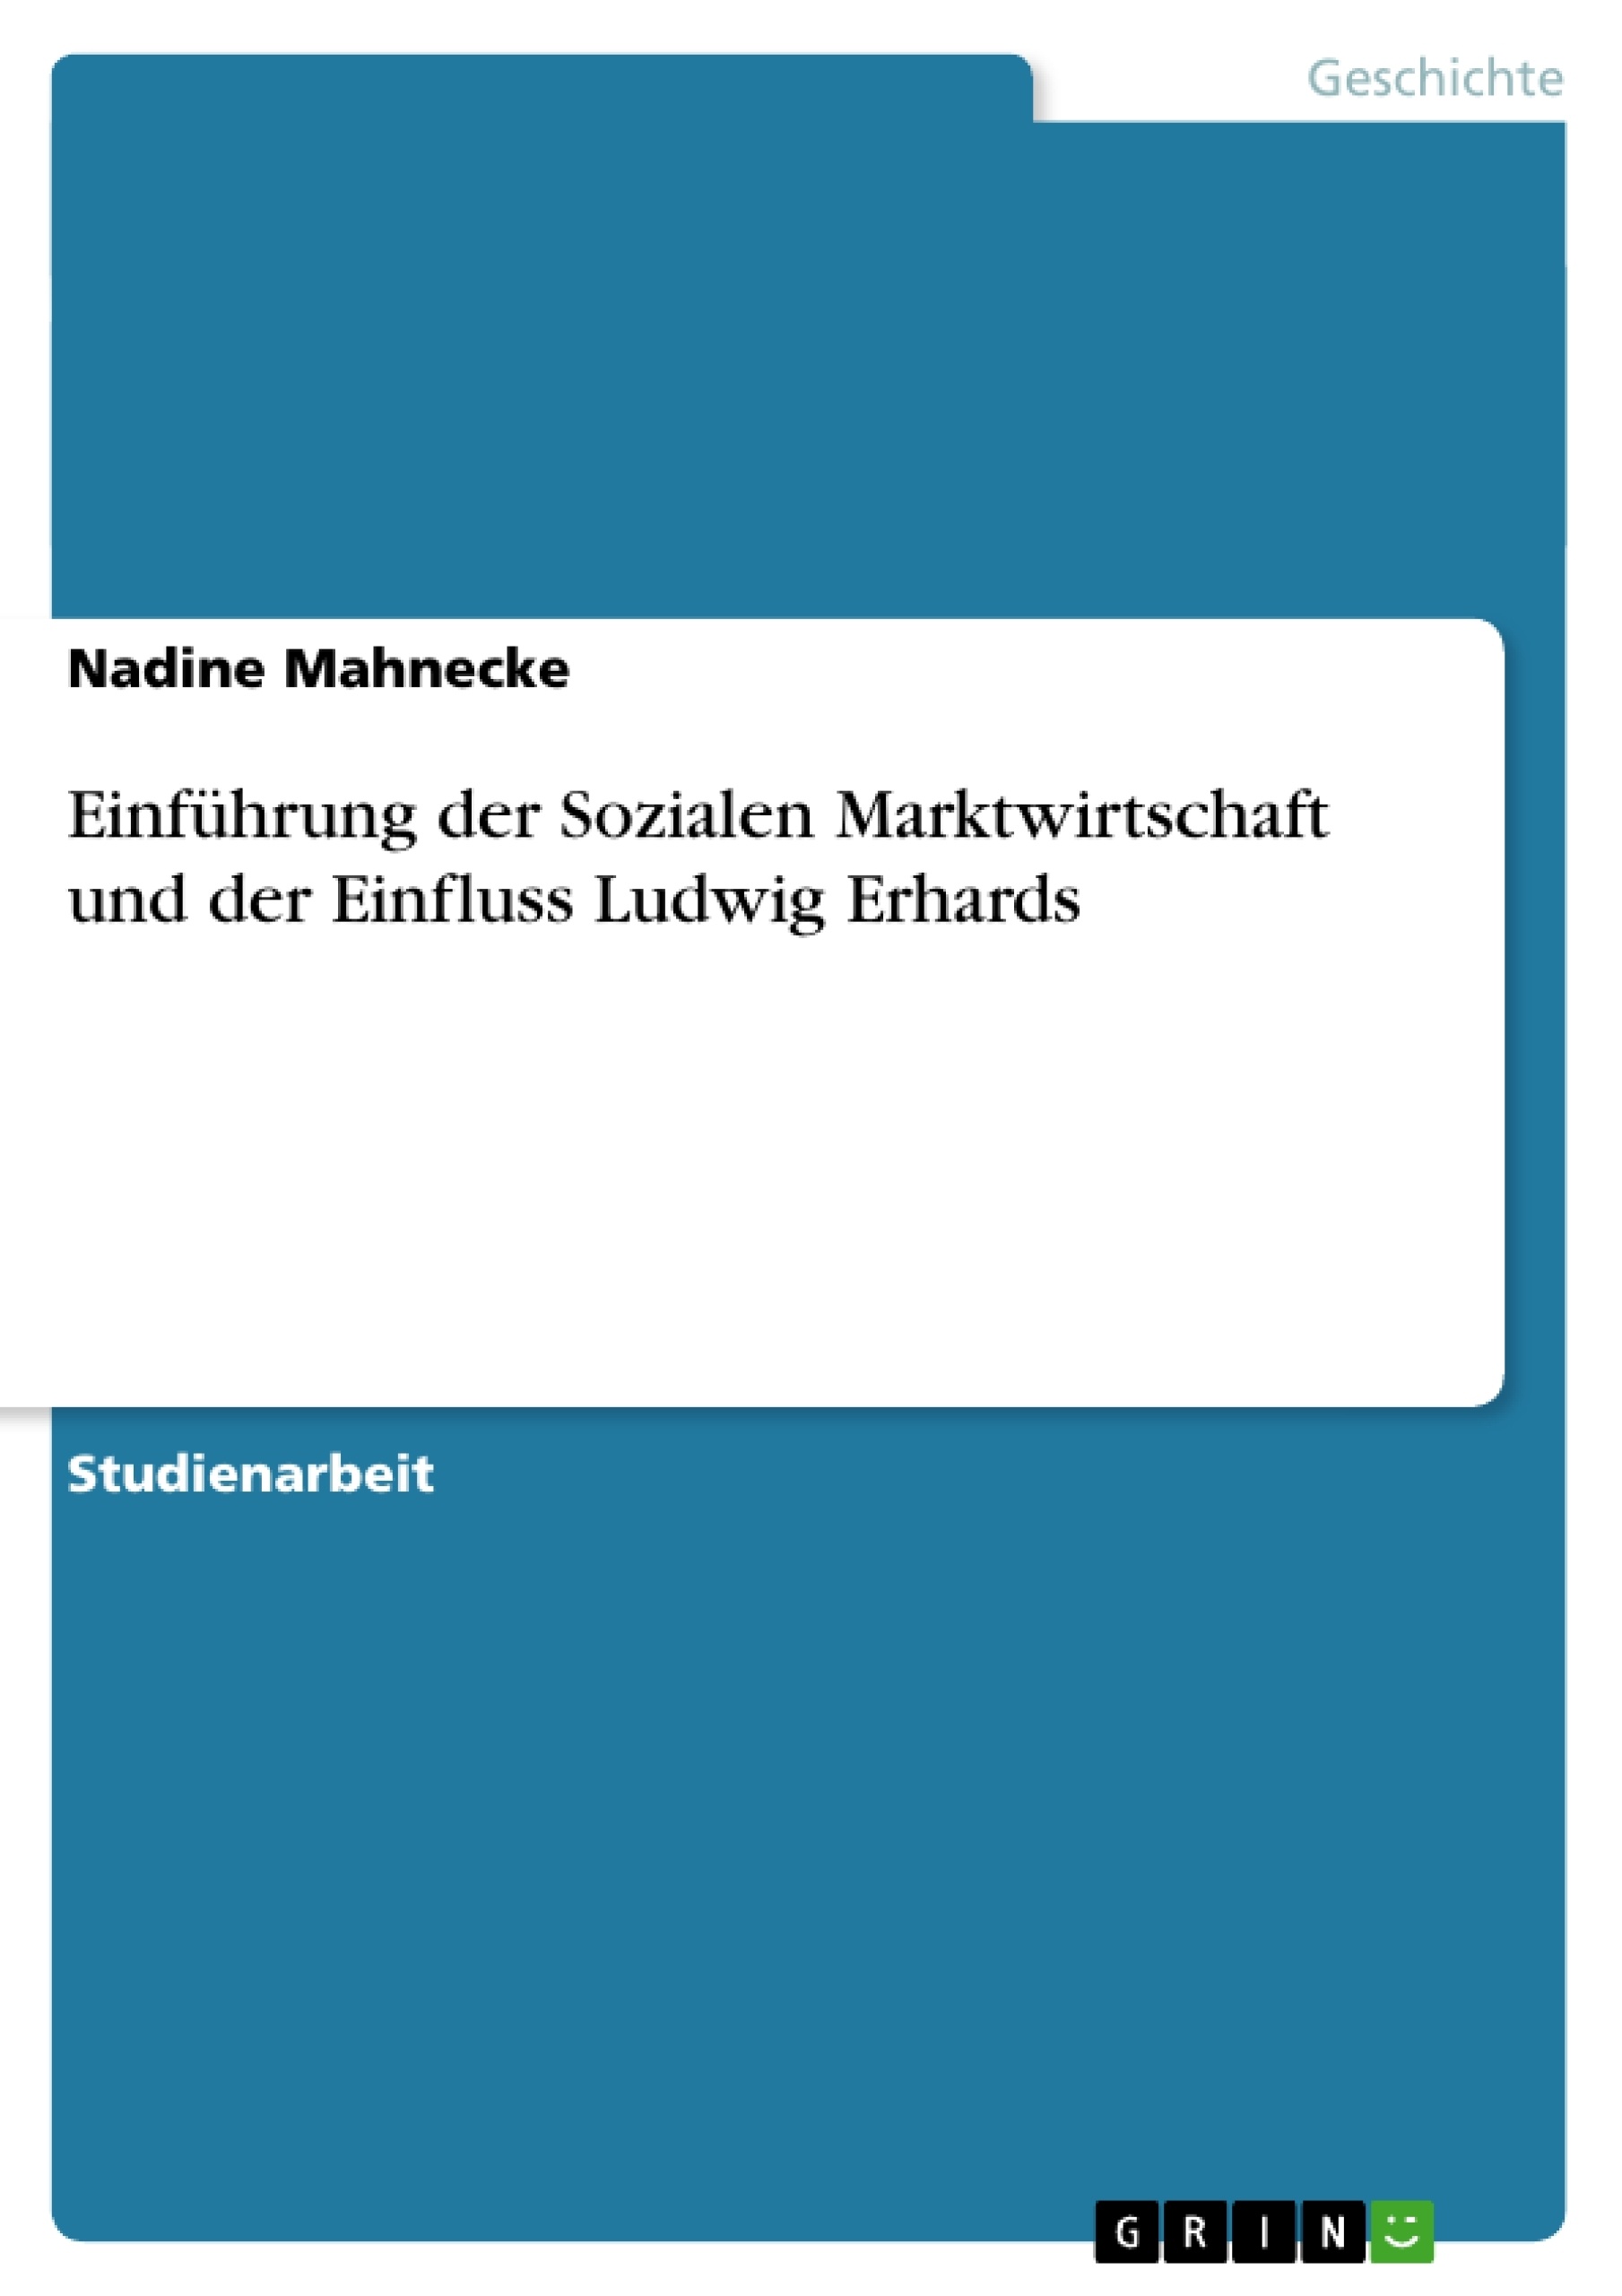 Titre: Einführung der Sozialen Marktwirtschaft und der Einfluss Ludwig Erhards